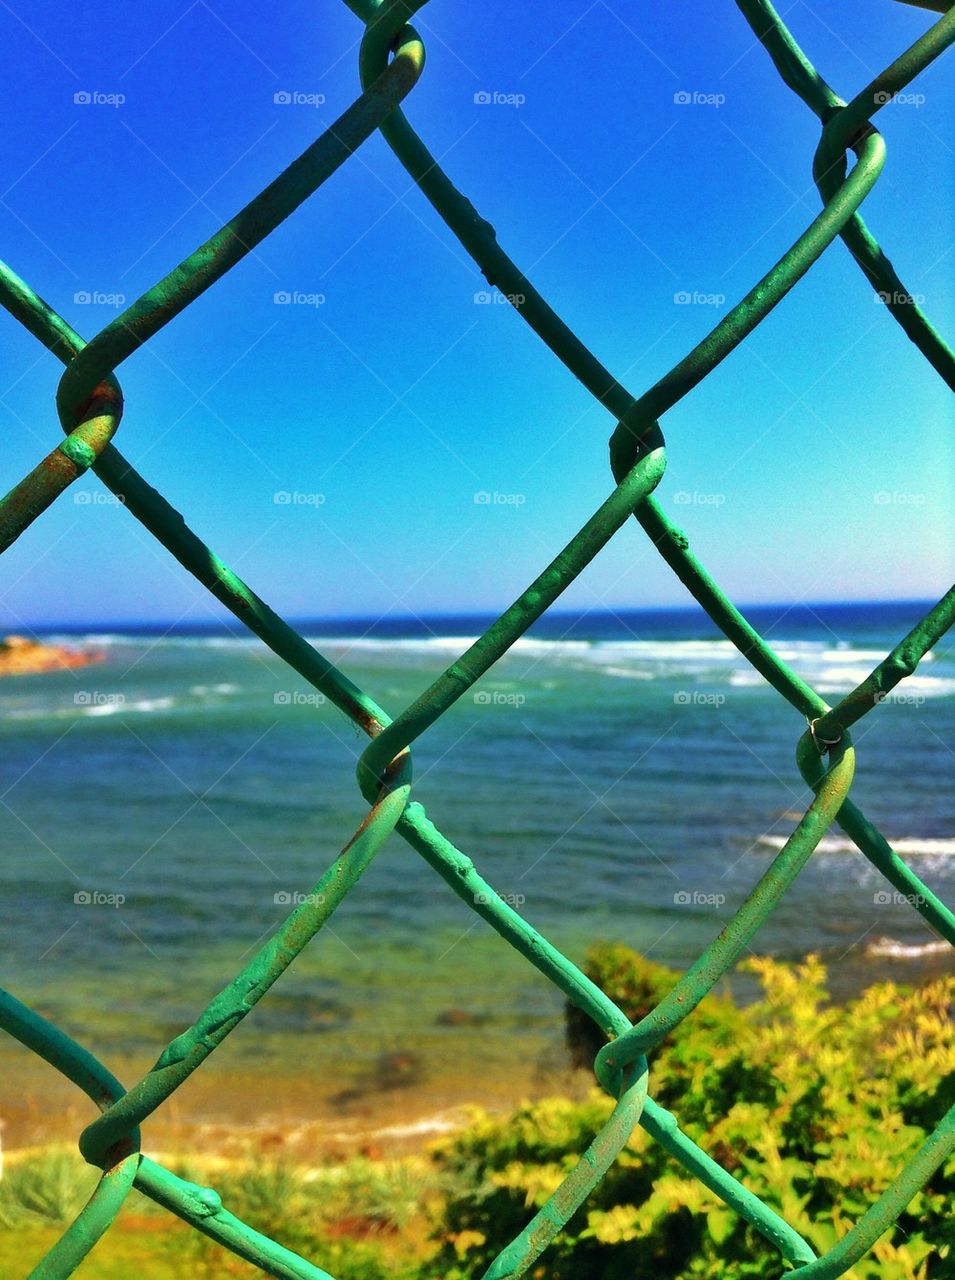 Sea gate